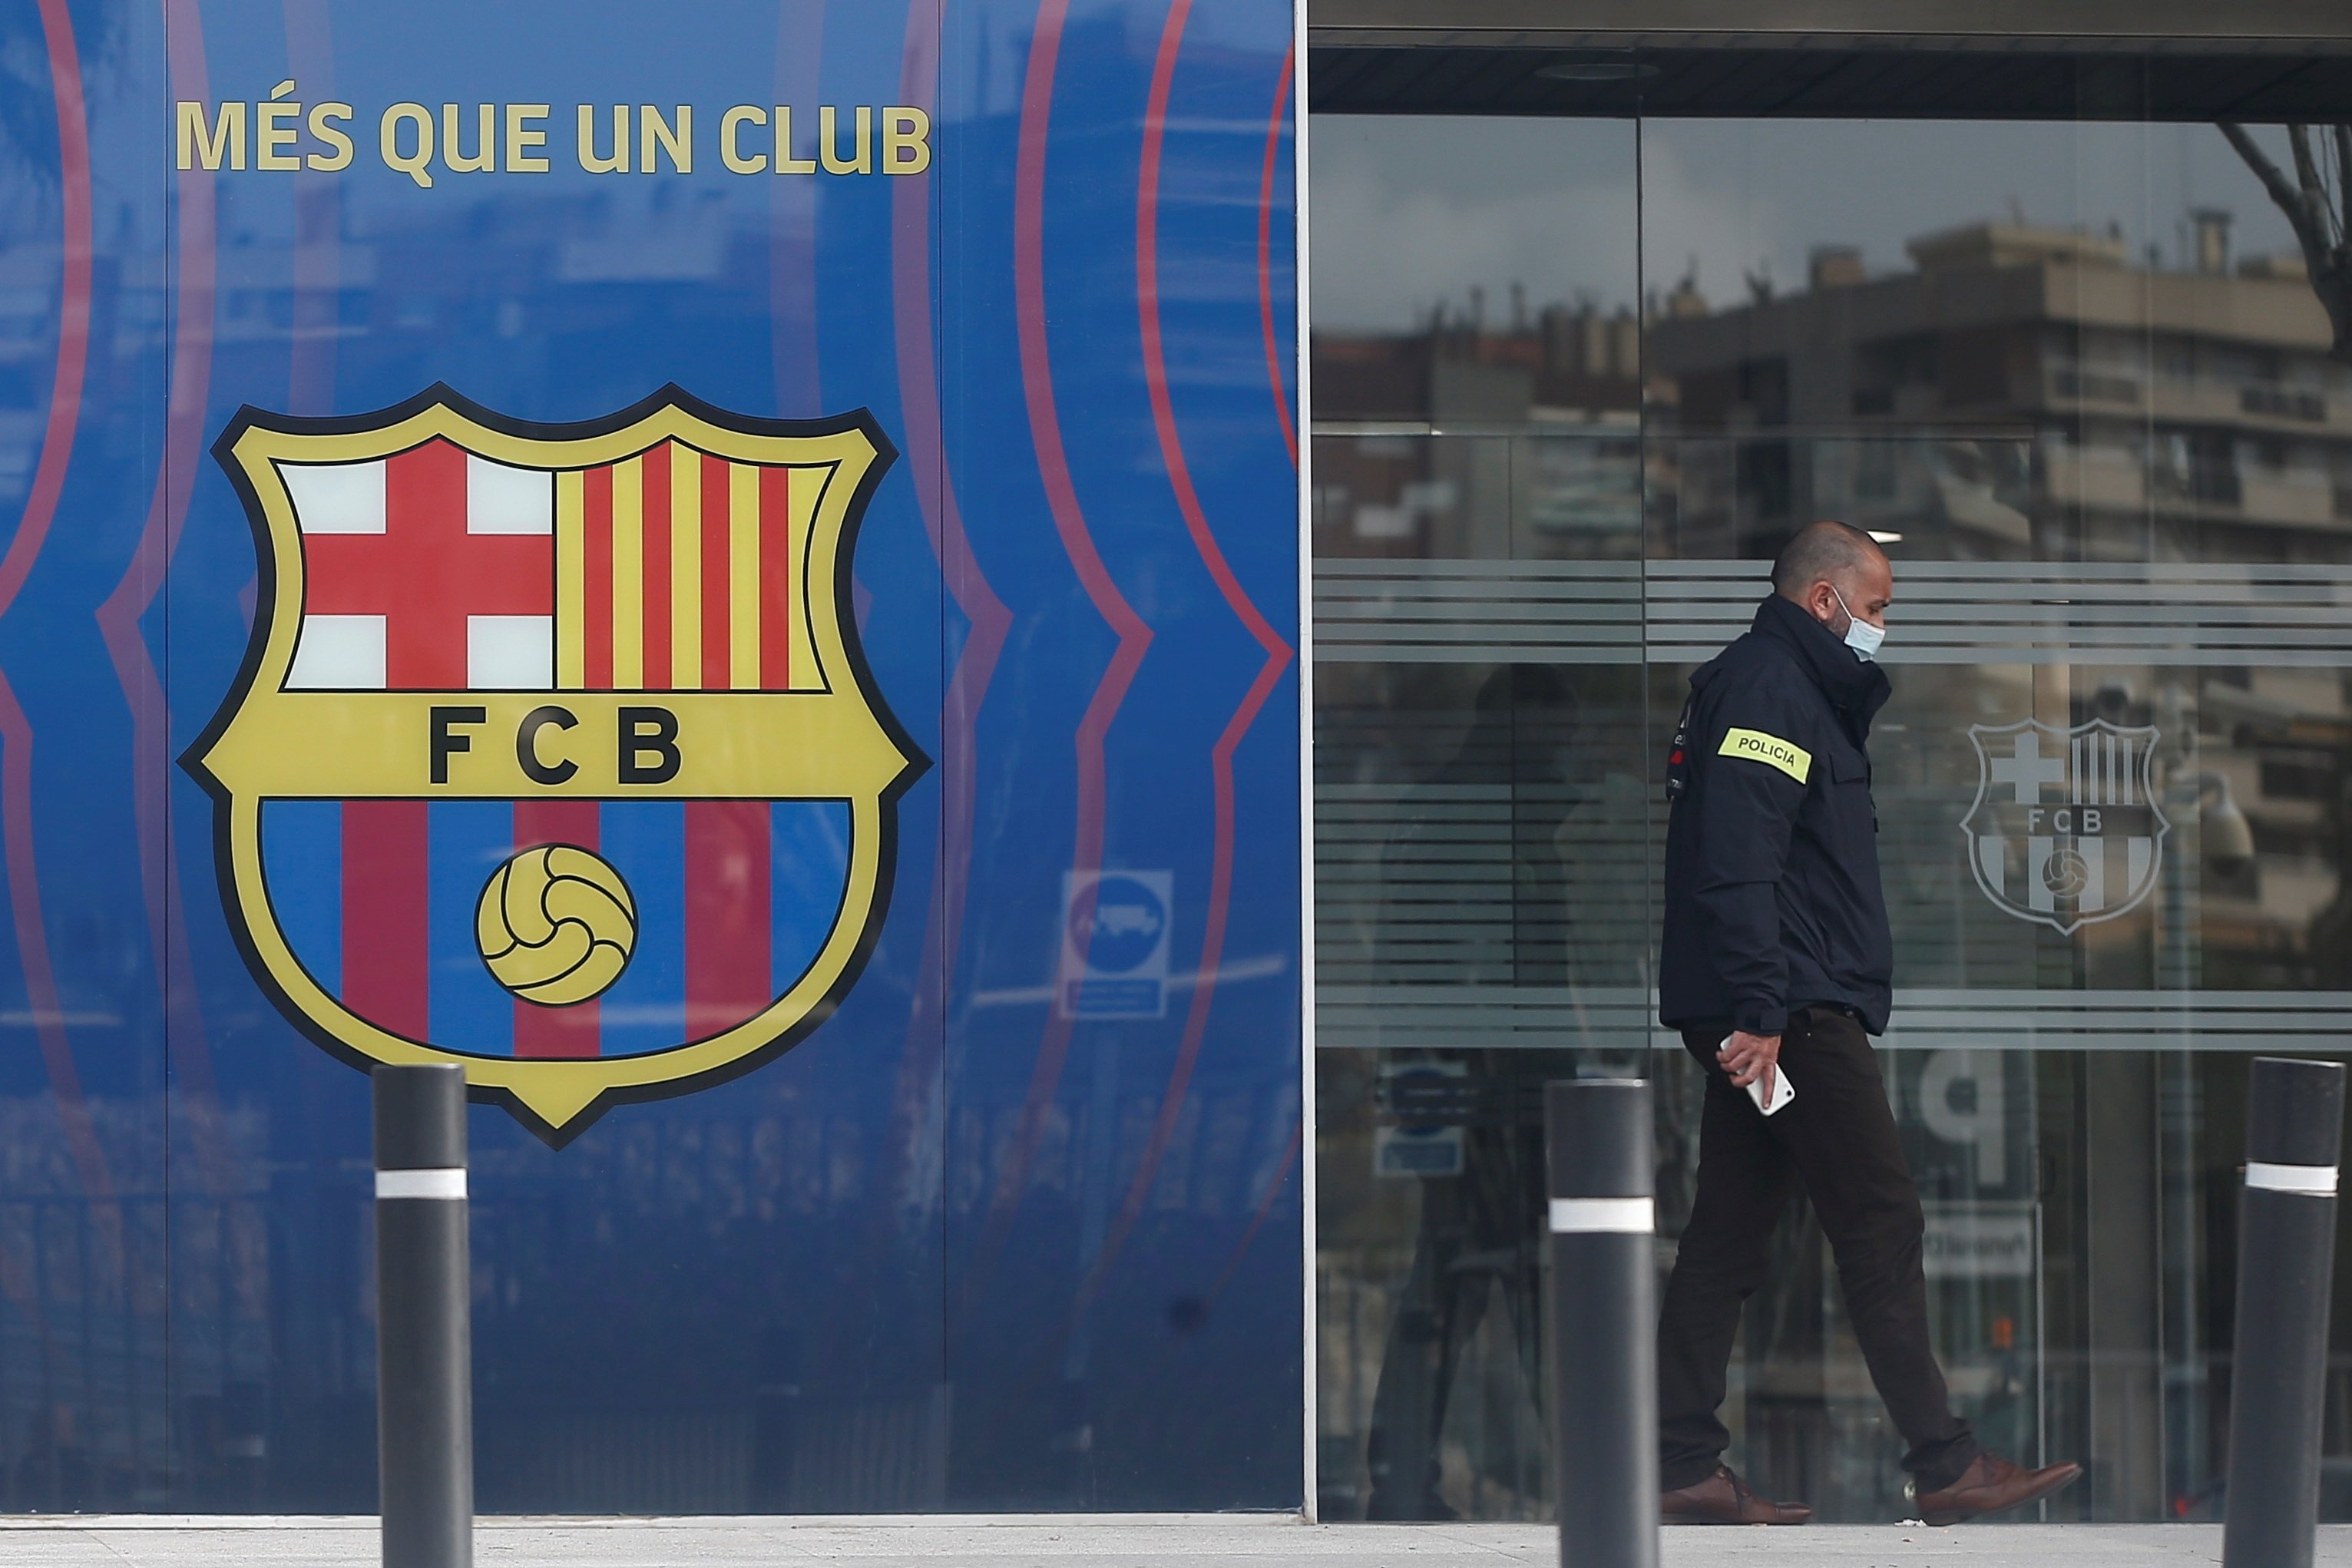 Former Barça president Bartomeu arrested as Mossos d'Esquadra raid Camp Nou